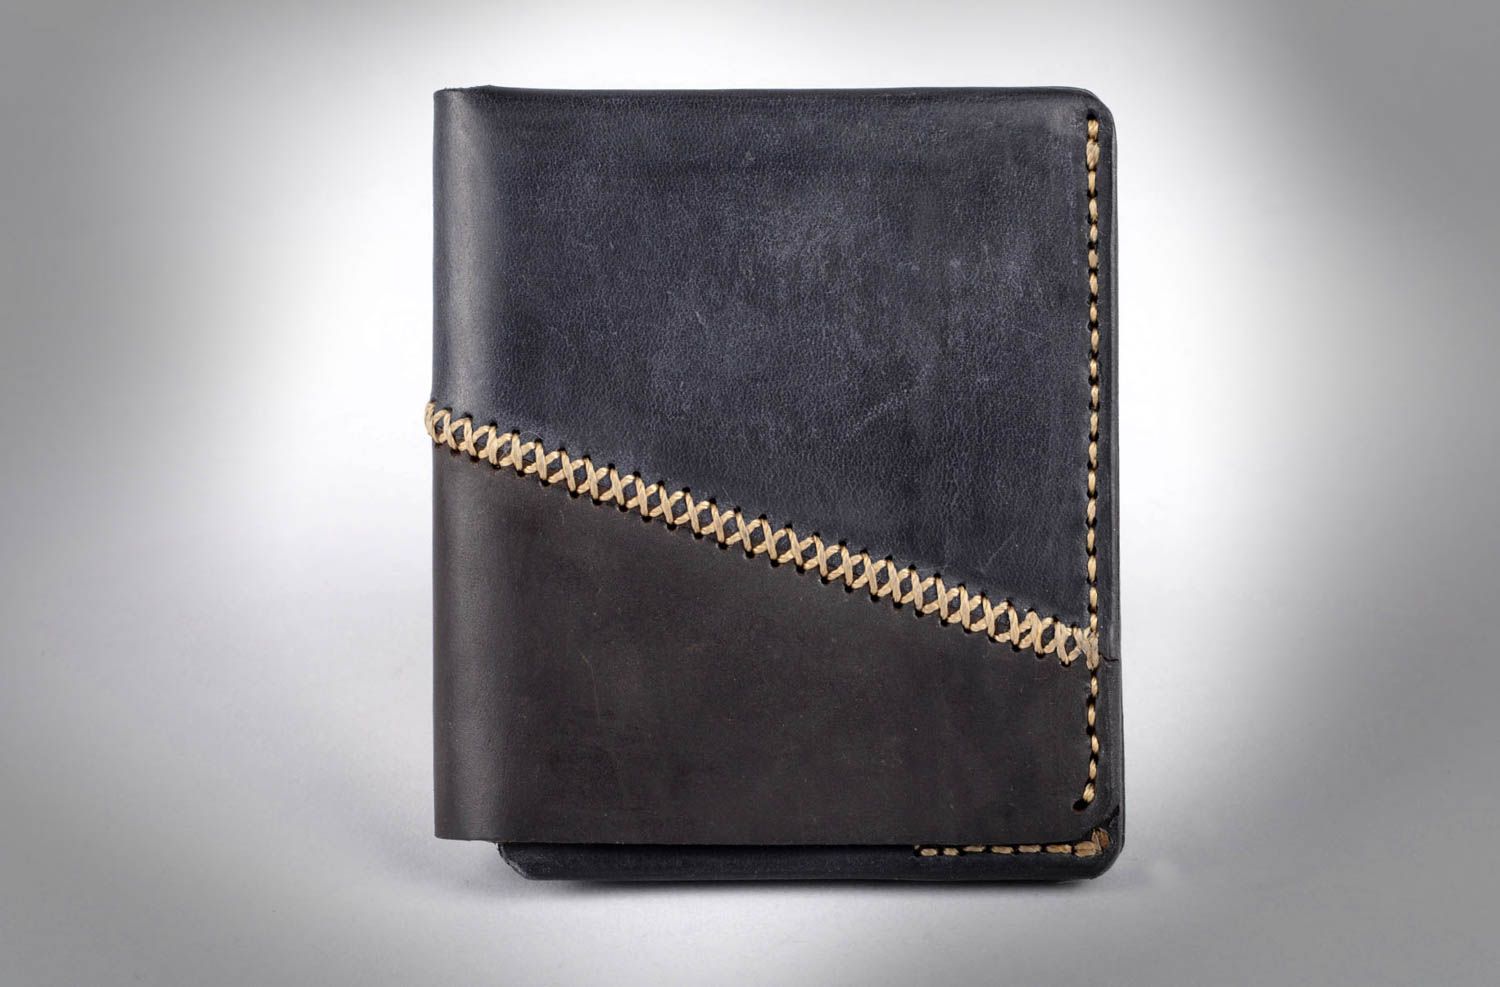 Оригинальный кошелек для мужчин хенд мейд кожаный кошелек мужское портмоне фото 5